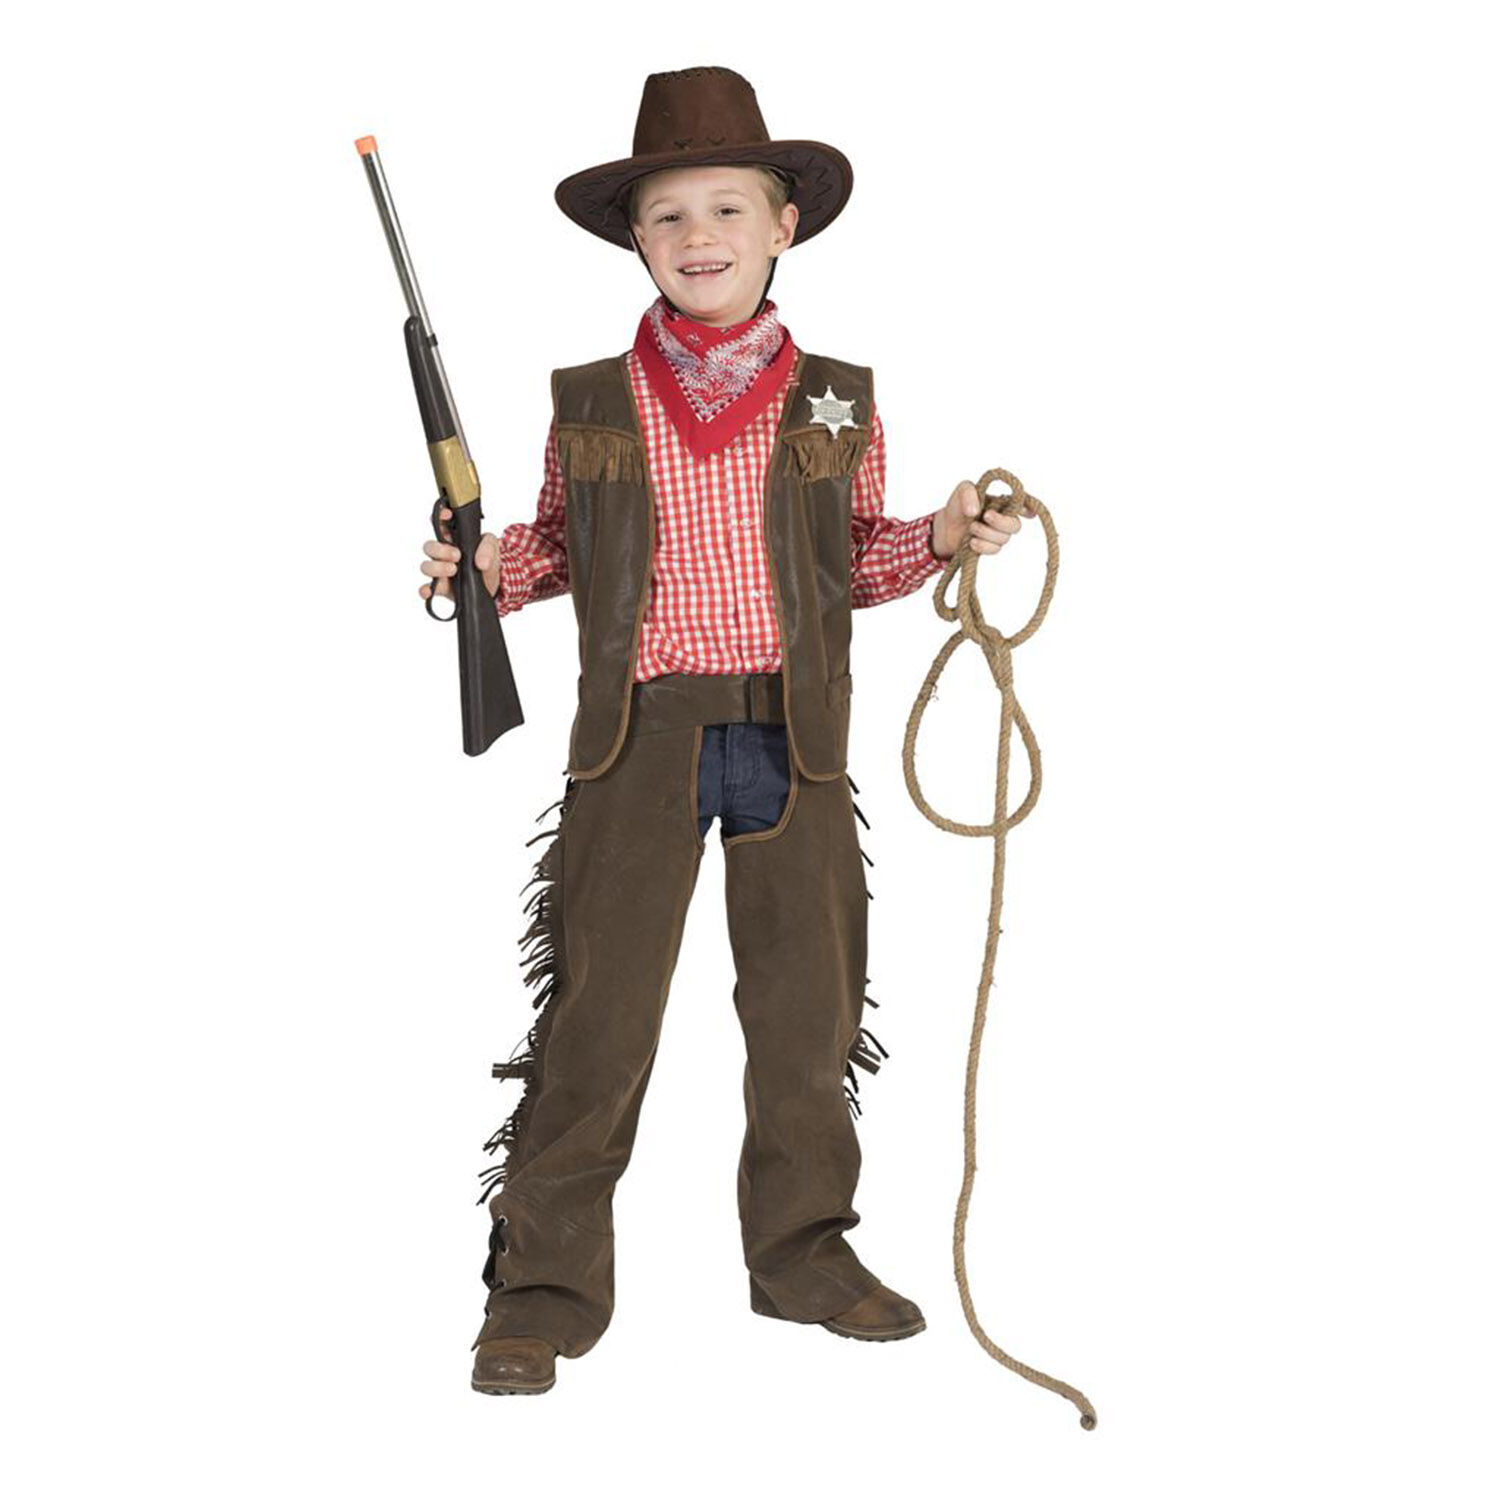 NEU Kinder-Kostm Cowboy Billy, 2-tlg. mit Weste und Chaps, braun, Gr. 116